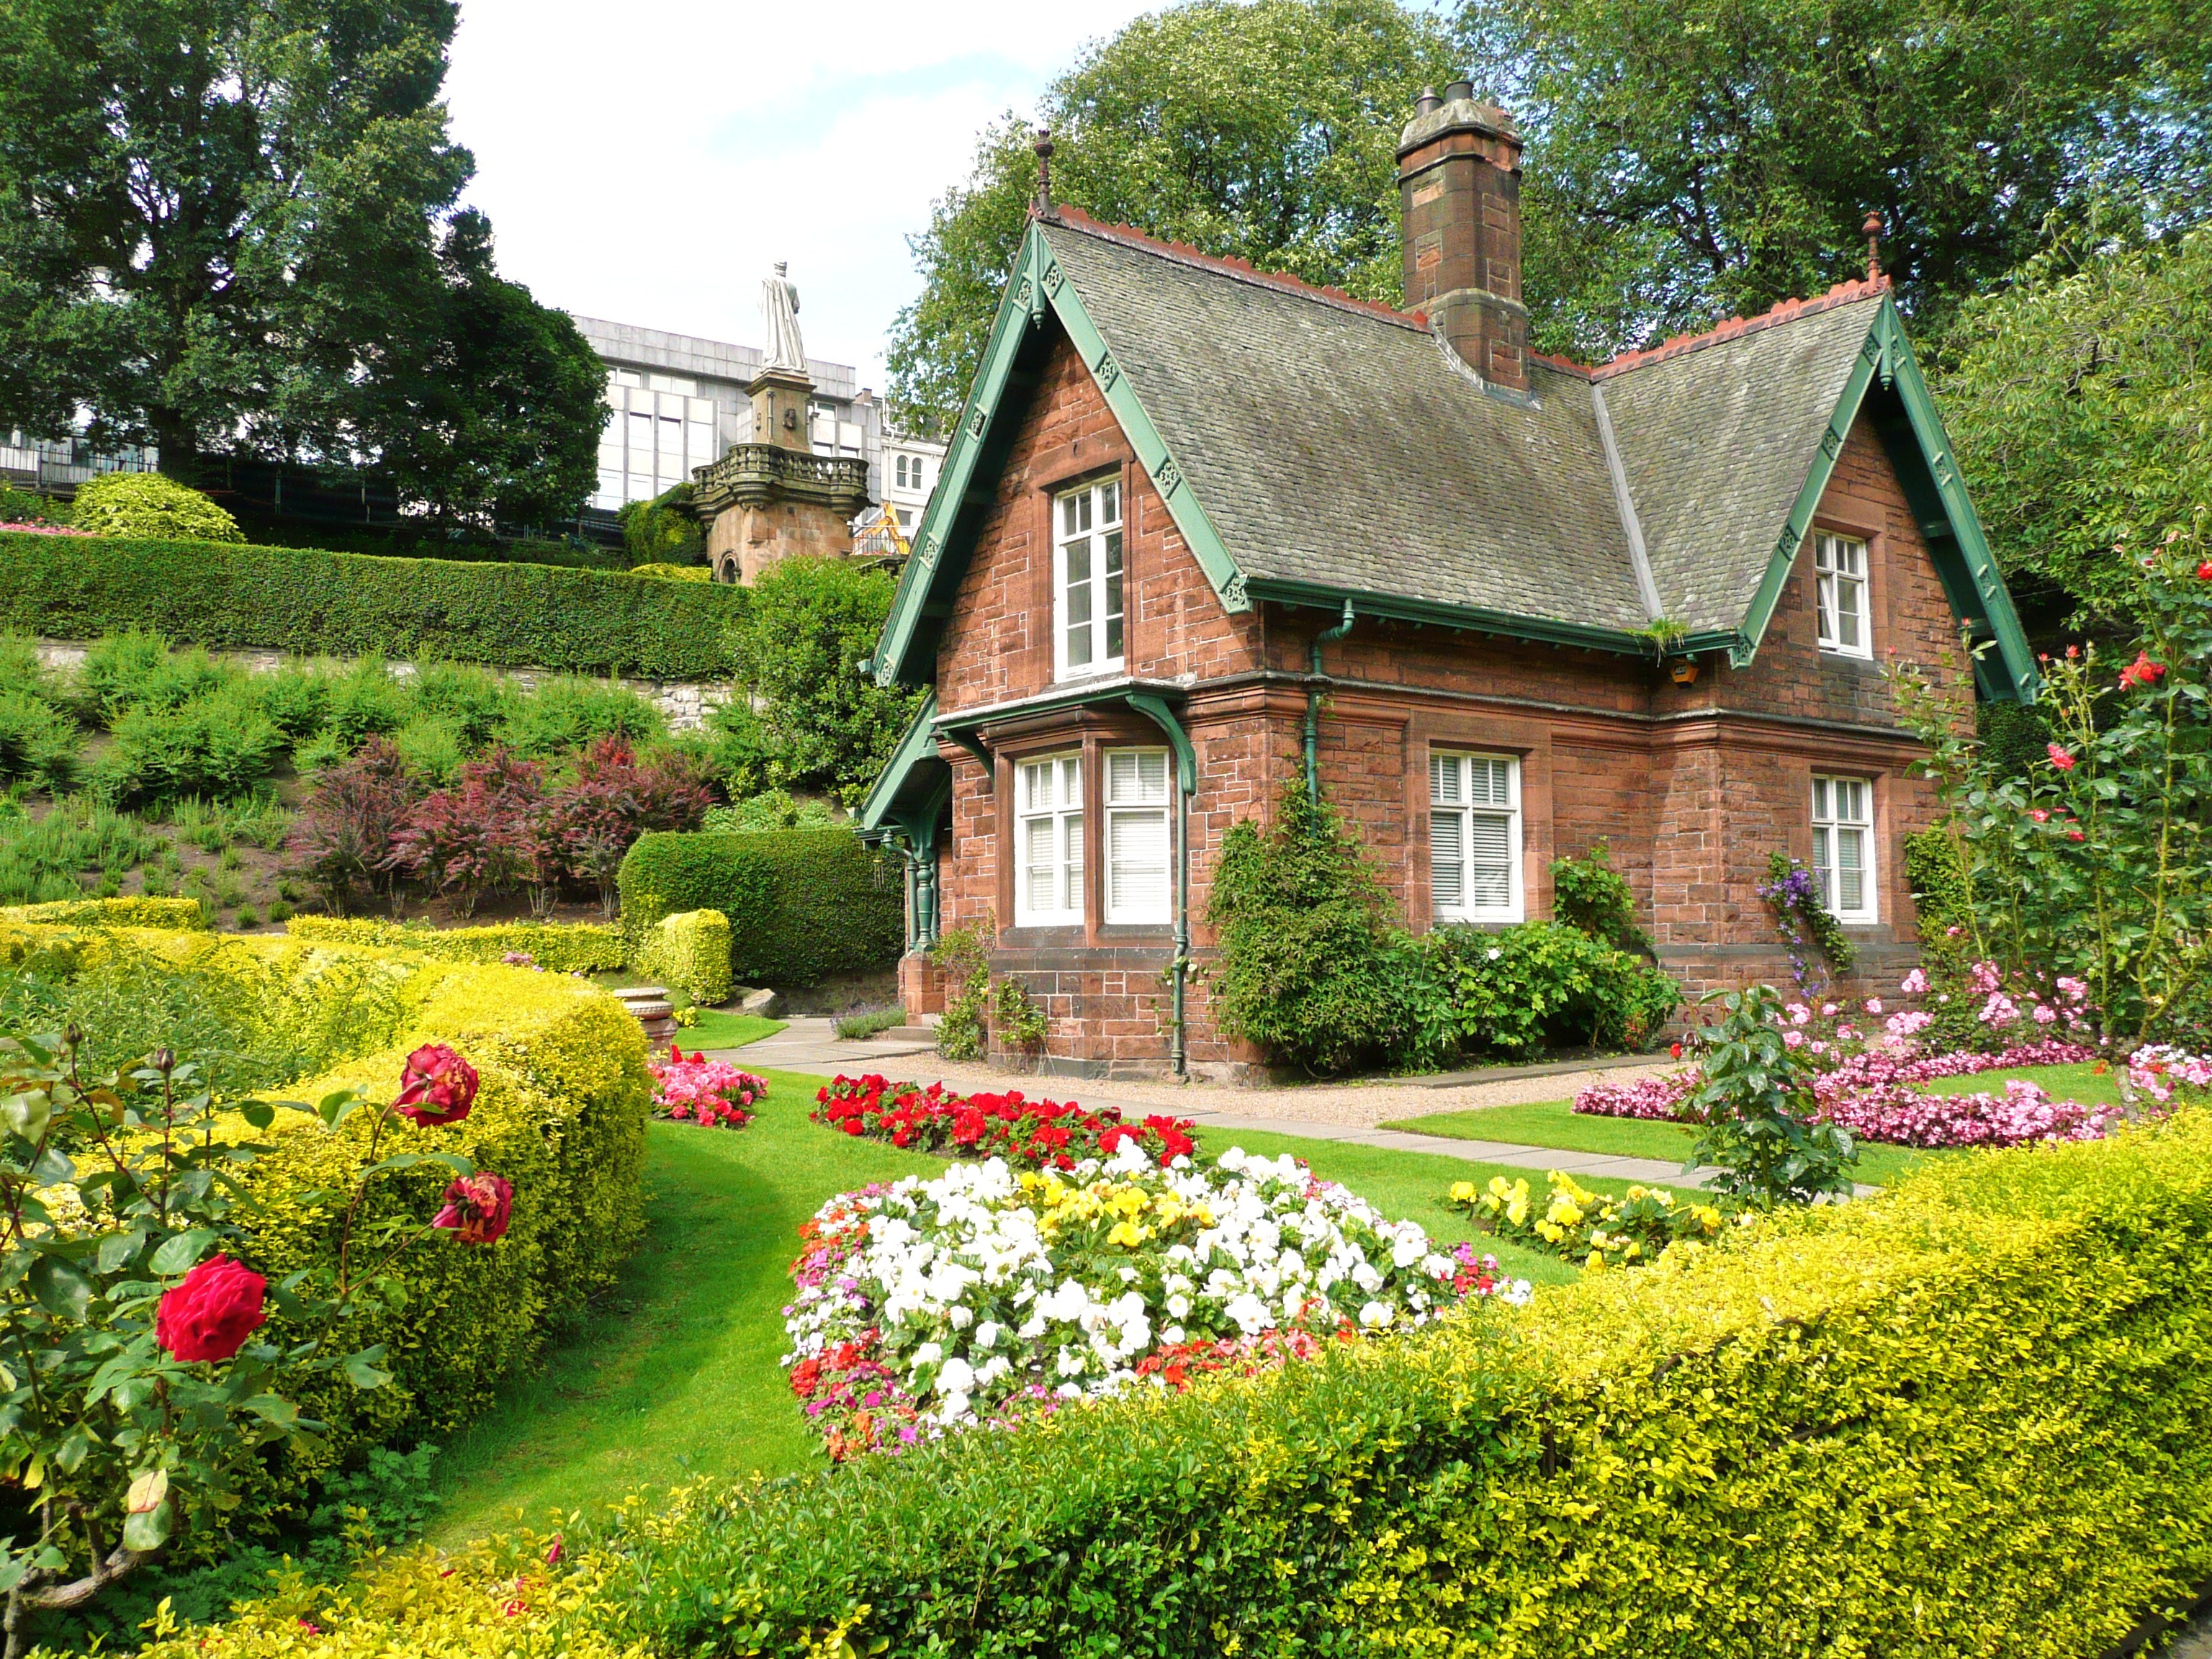 Английский дом видео. Английские домики с садом каменный Джейн Остен. Поместья Хэмпшир Англия. Домик садовника Эдинбург. Стиль Тюдор (Tudor Revival Cottage).